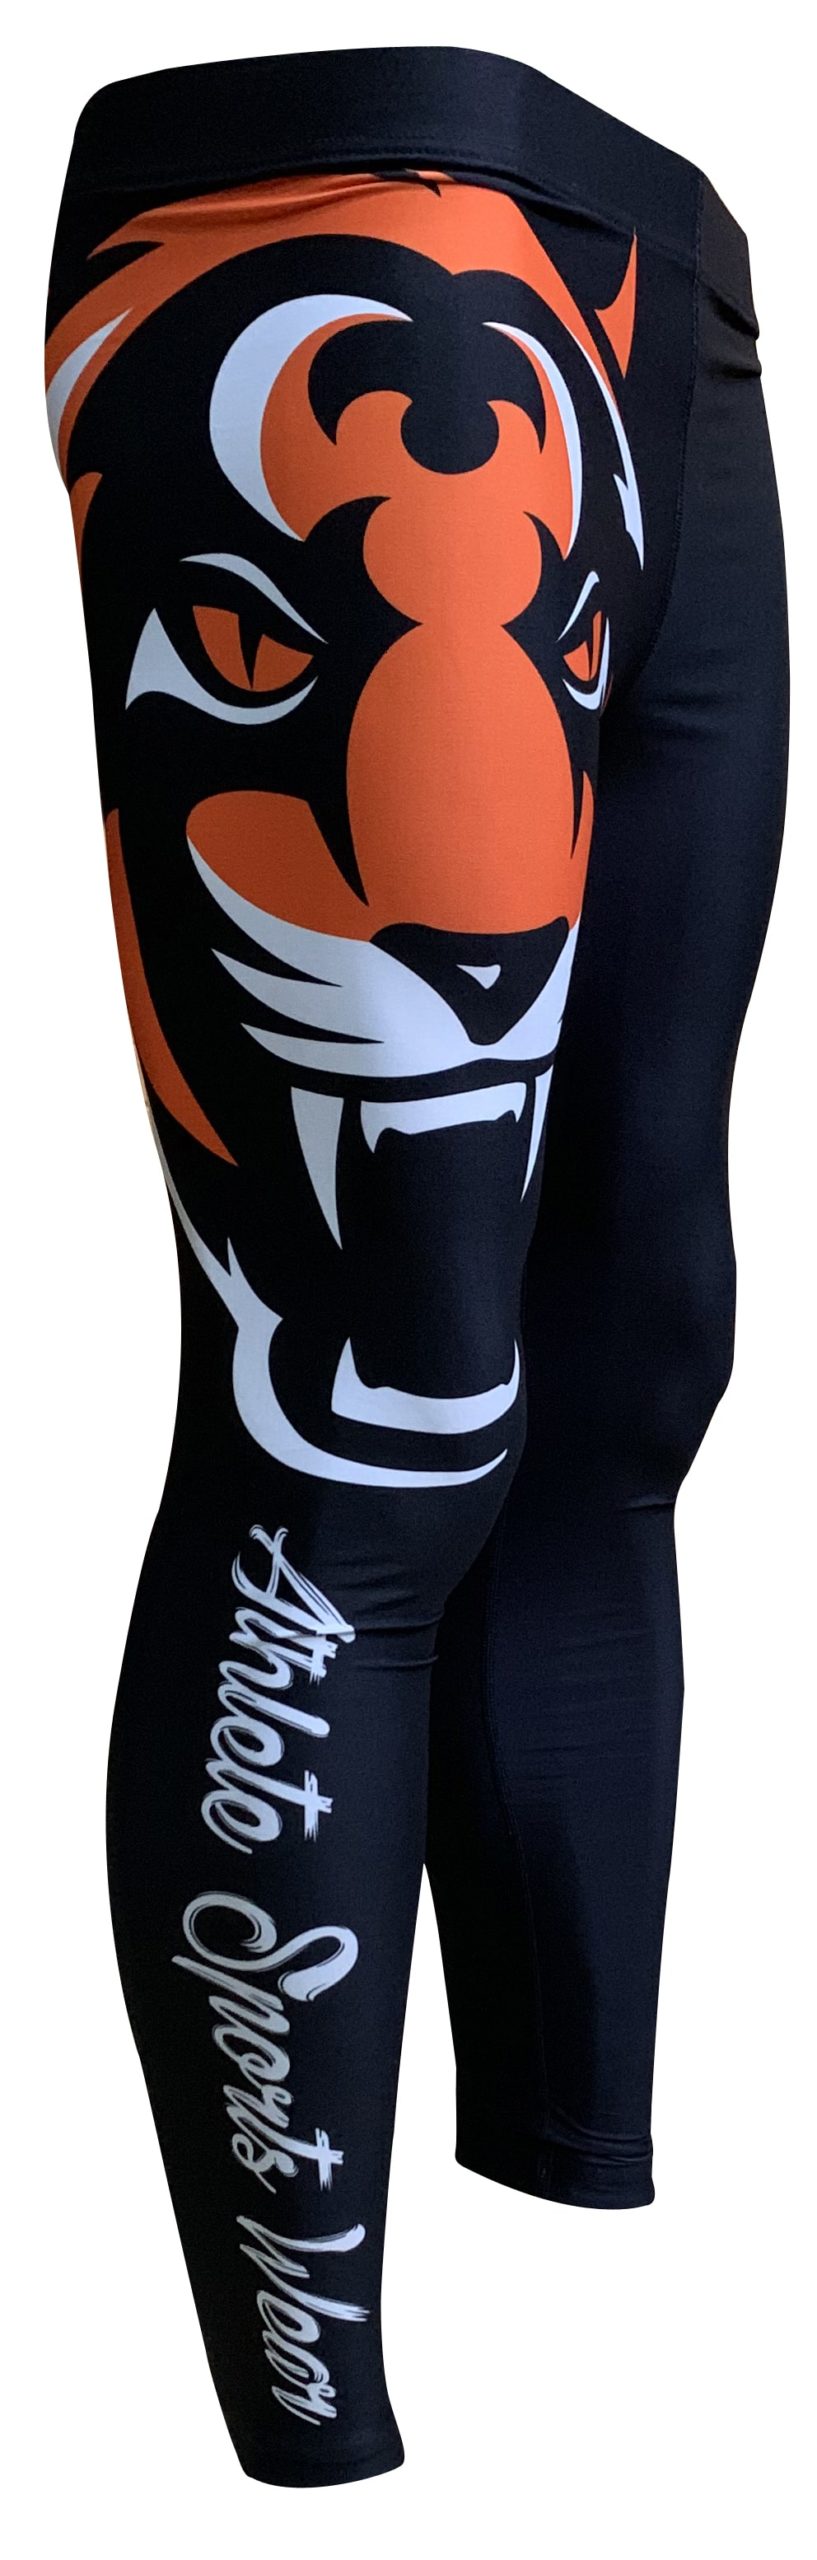 Tiger Men Leggings - Tiger Series Athlete Sports Wear